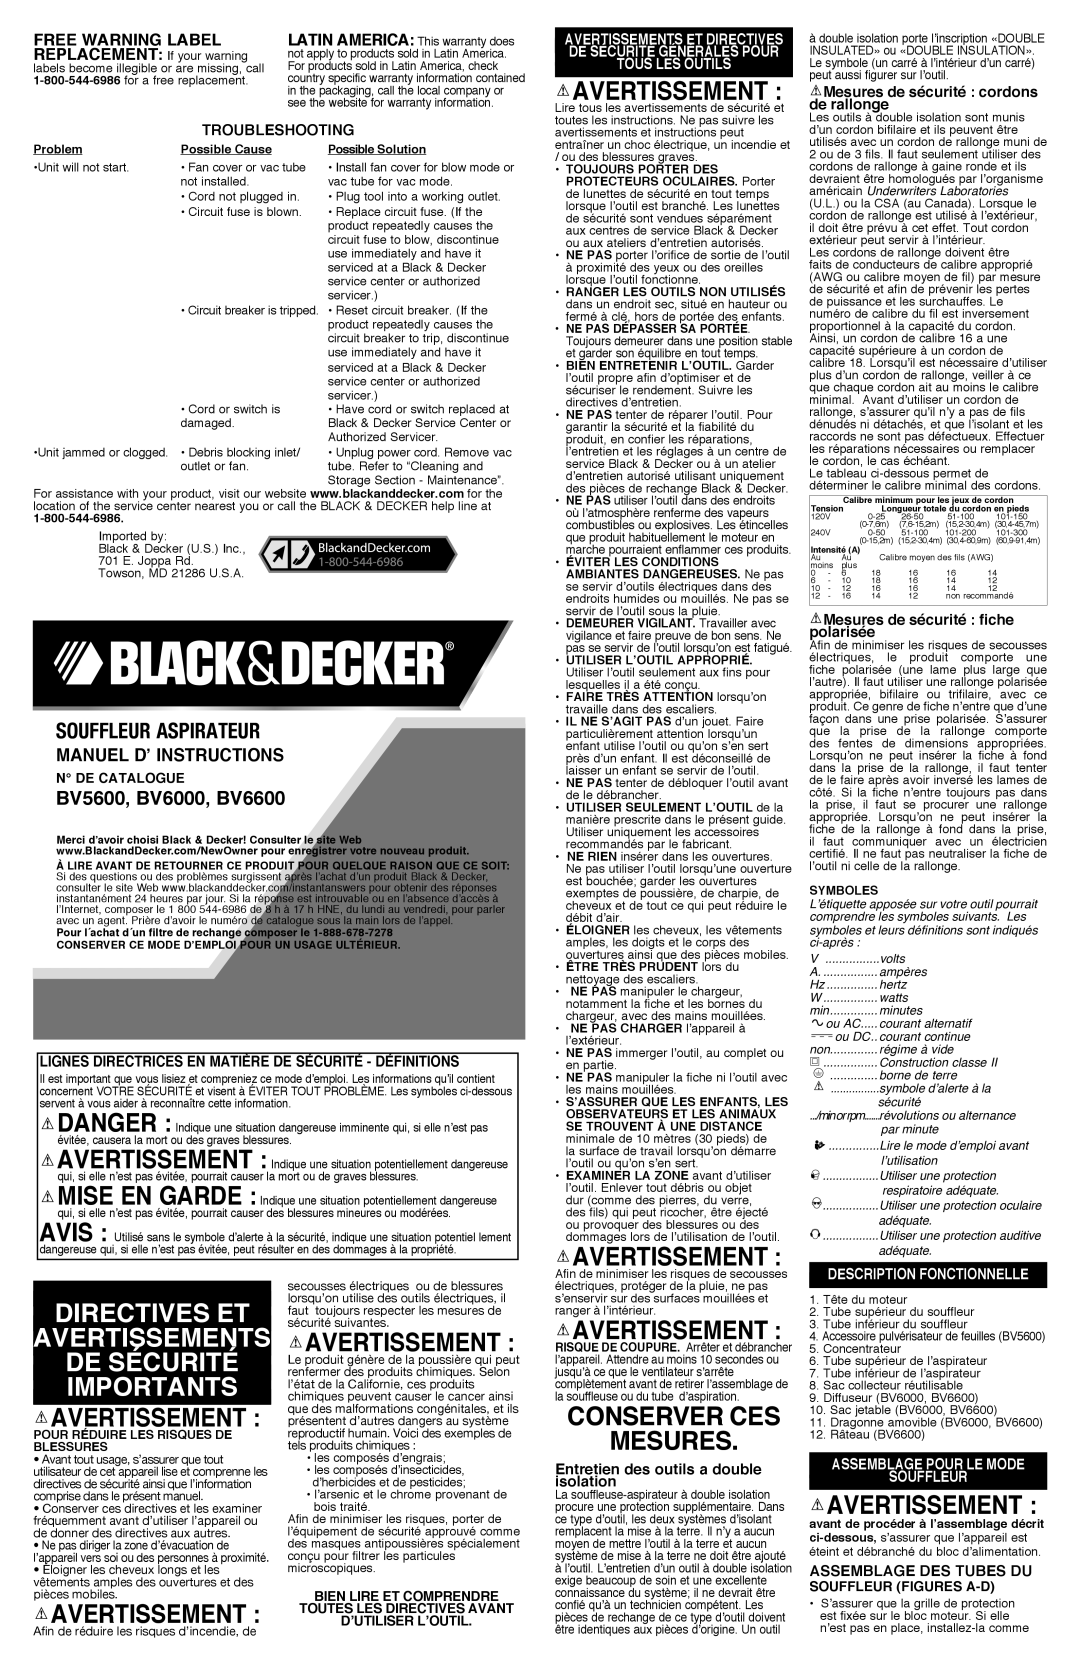 Black & Decker BV5600R Directives Et Avertissements De Sécurité Importants, Conserver Ces Mesures, free warning label 